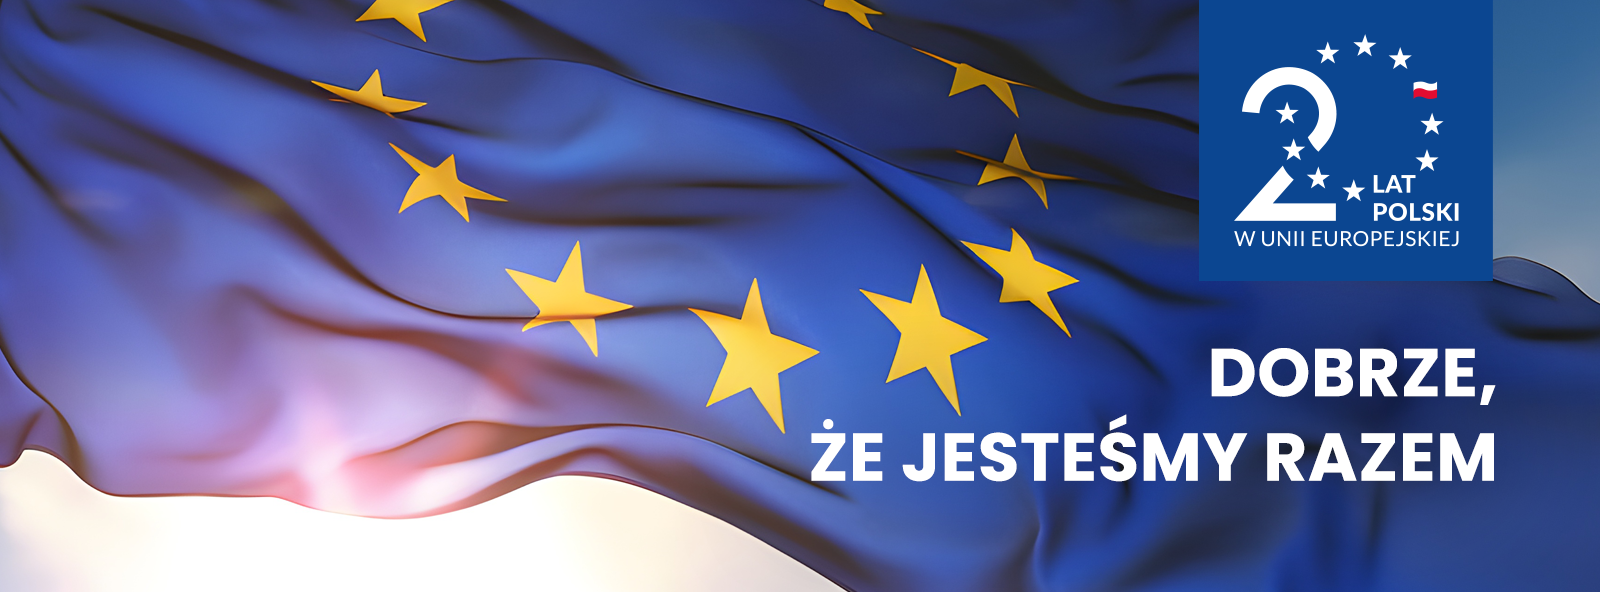 Jubileusz 20-lecia wstąpienia Polski do Unii Europejskiej - obraz przedstawiający falującą flagę Unii Europejskiej